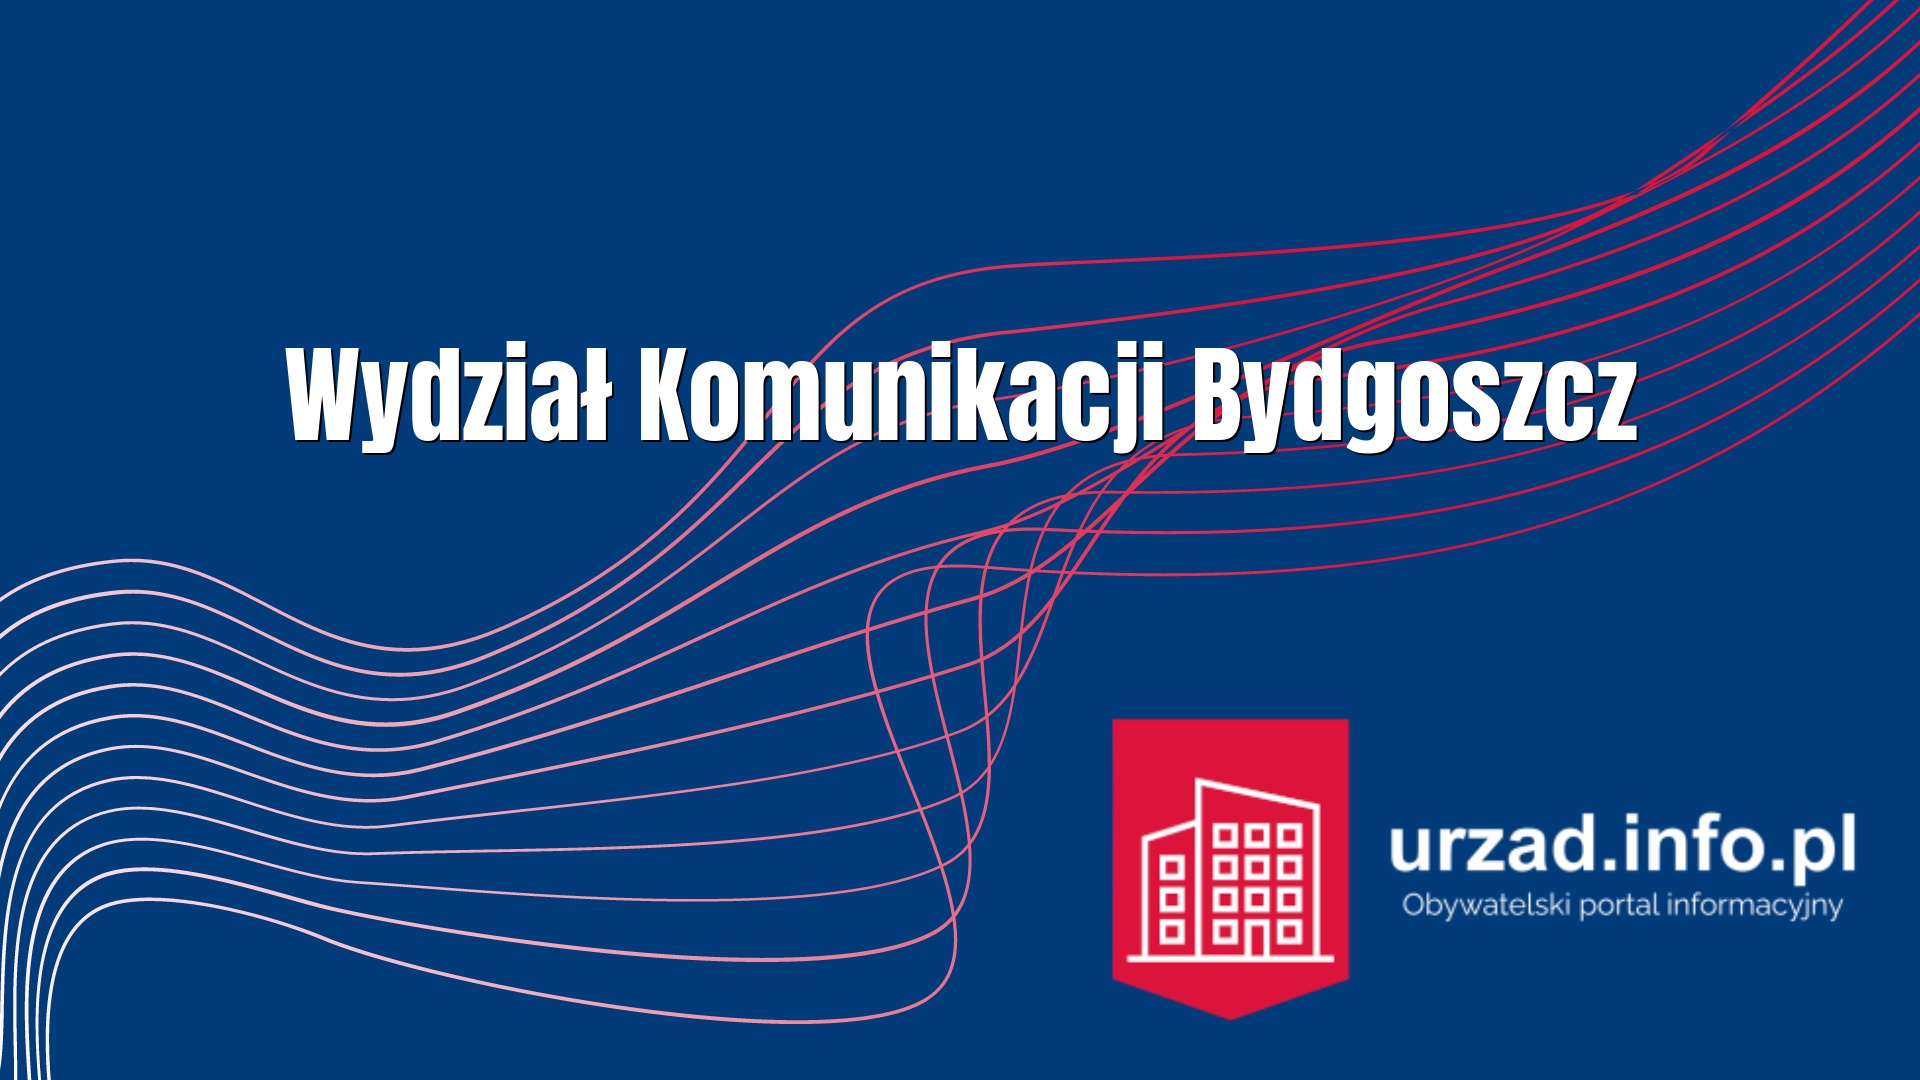 Wydział Komunikacji Bydgoszcz